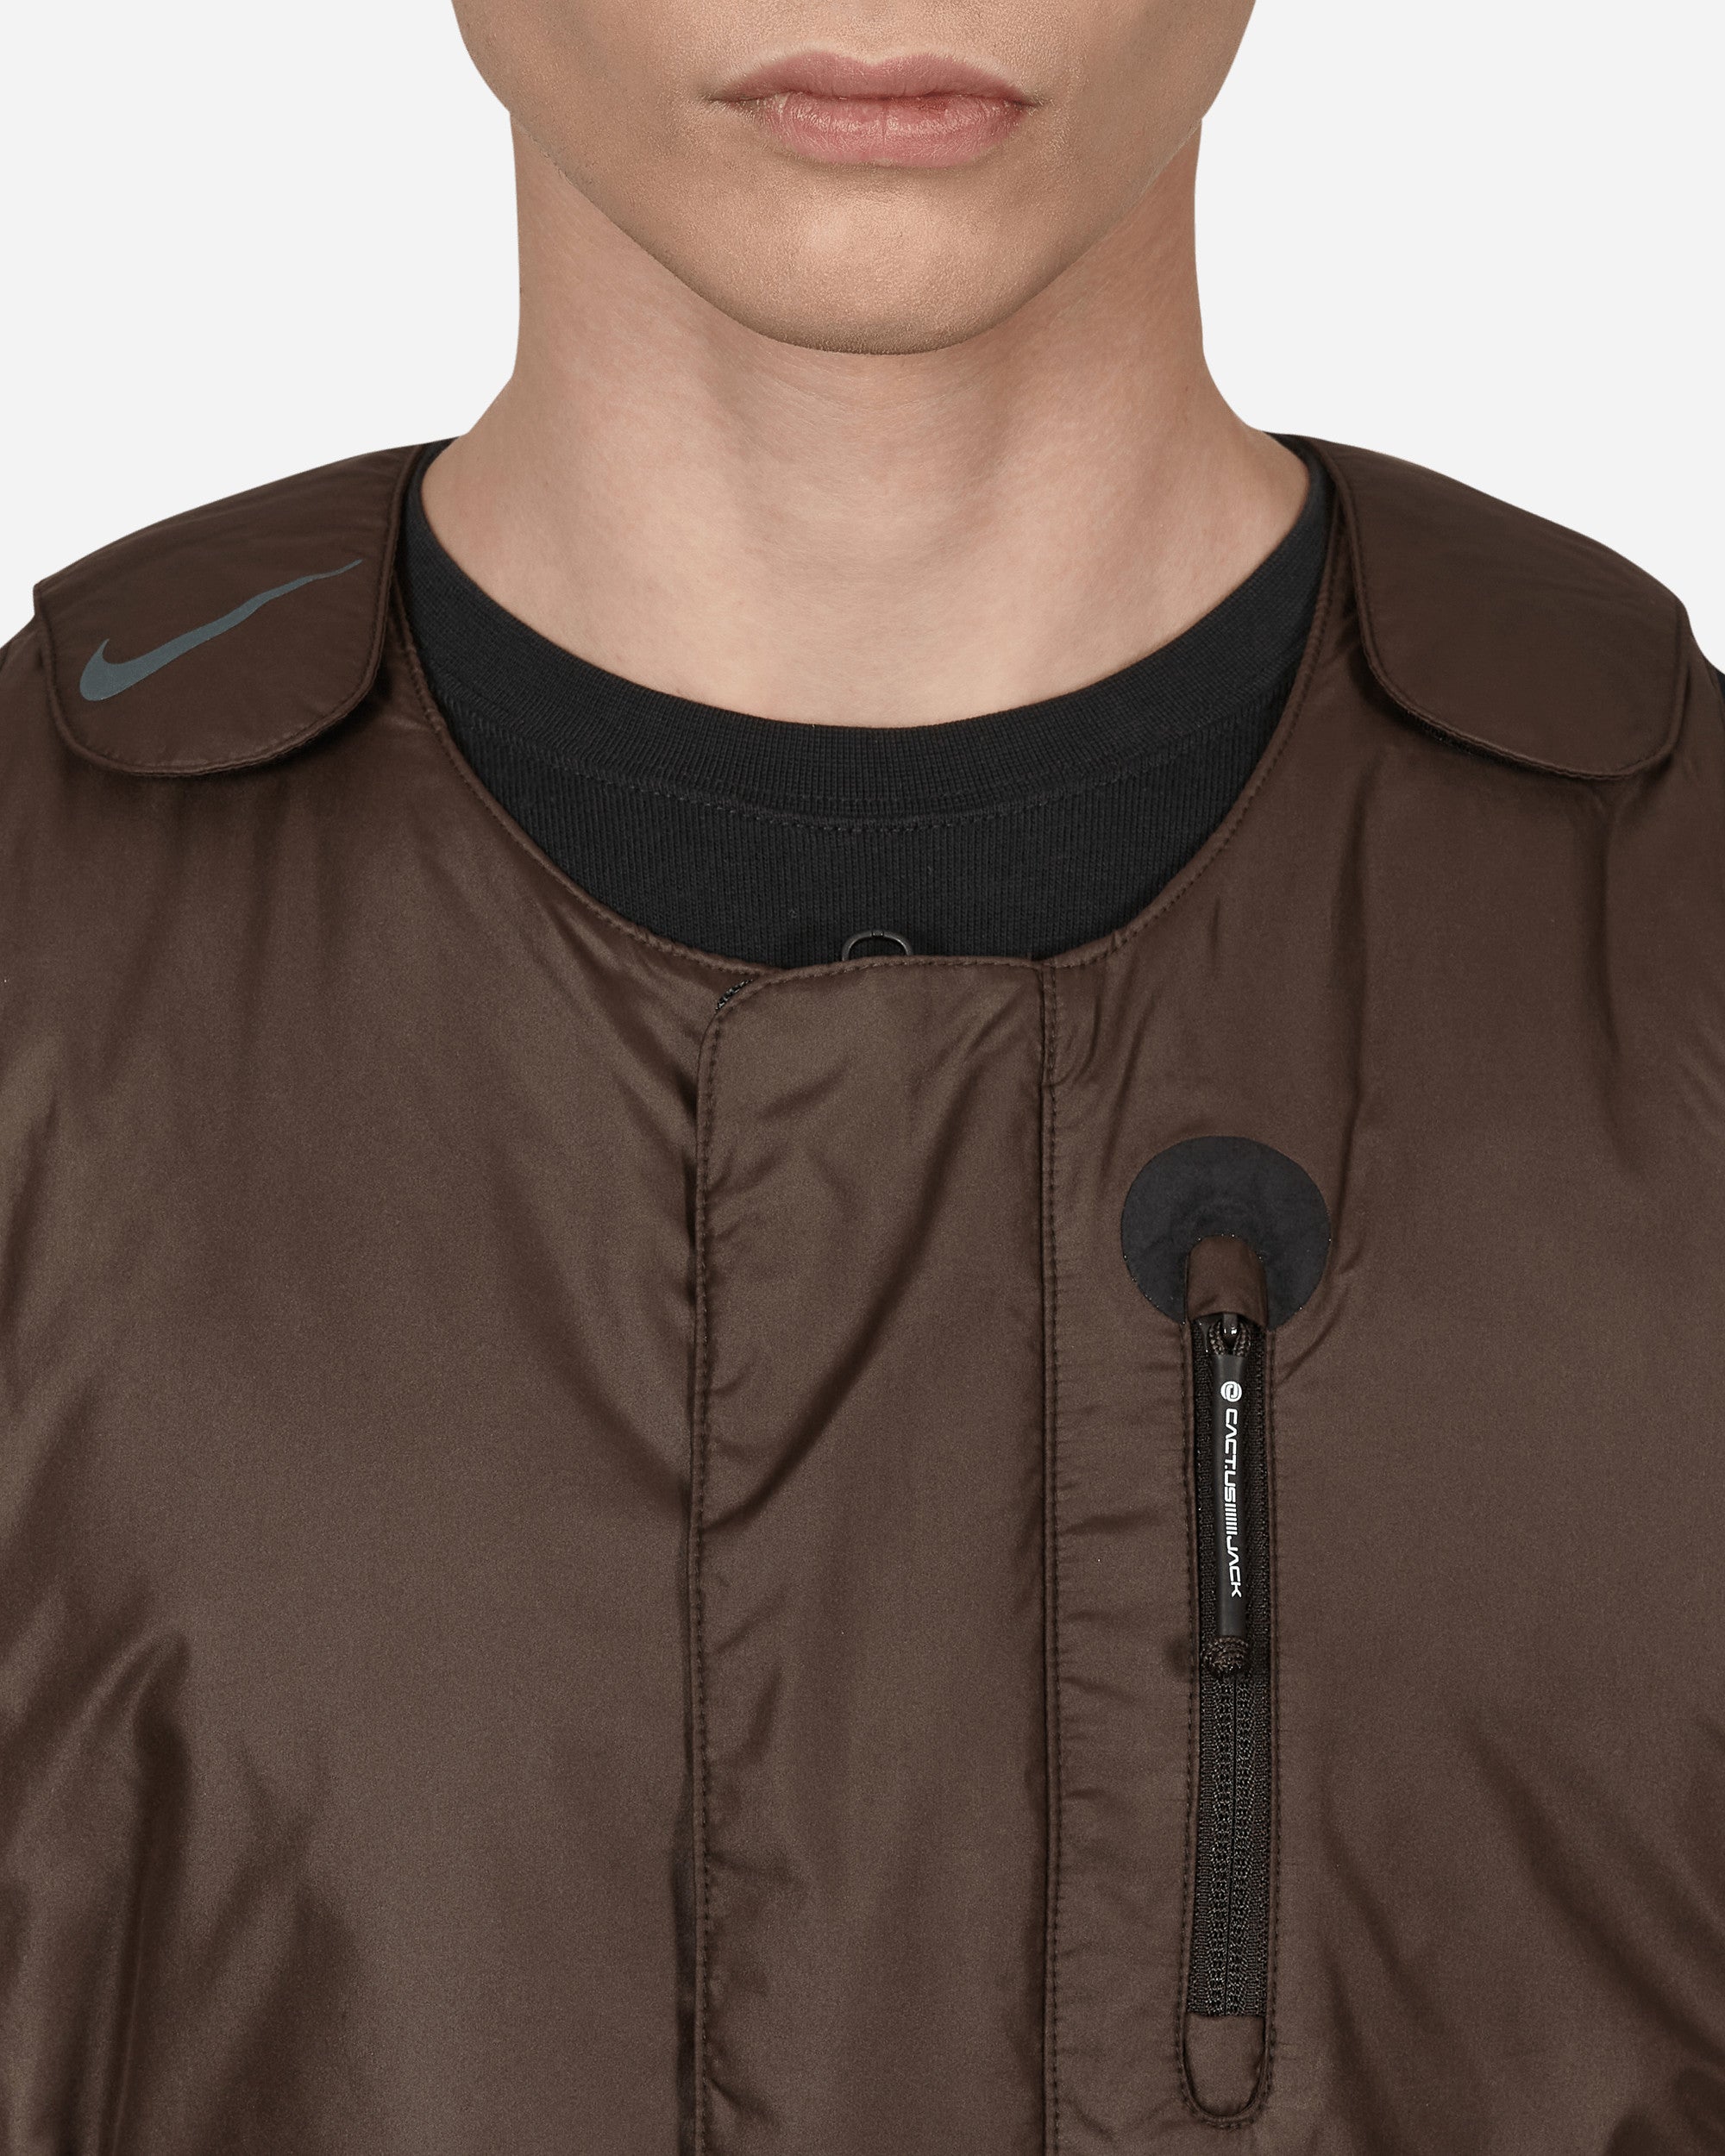 Nike Special Project Nrg Bh Vest Velvet Brown Coats and Jackets Vests DM1277-220